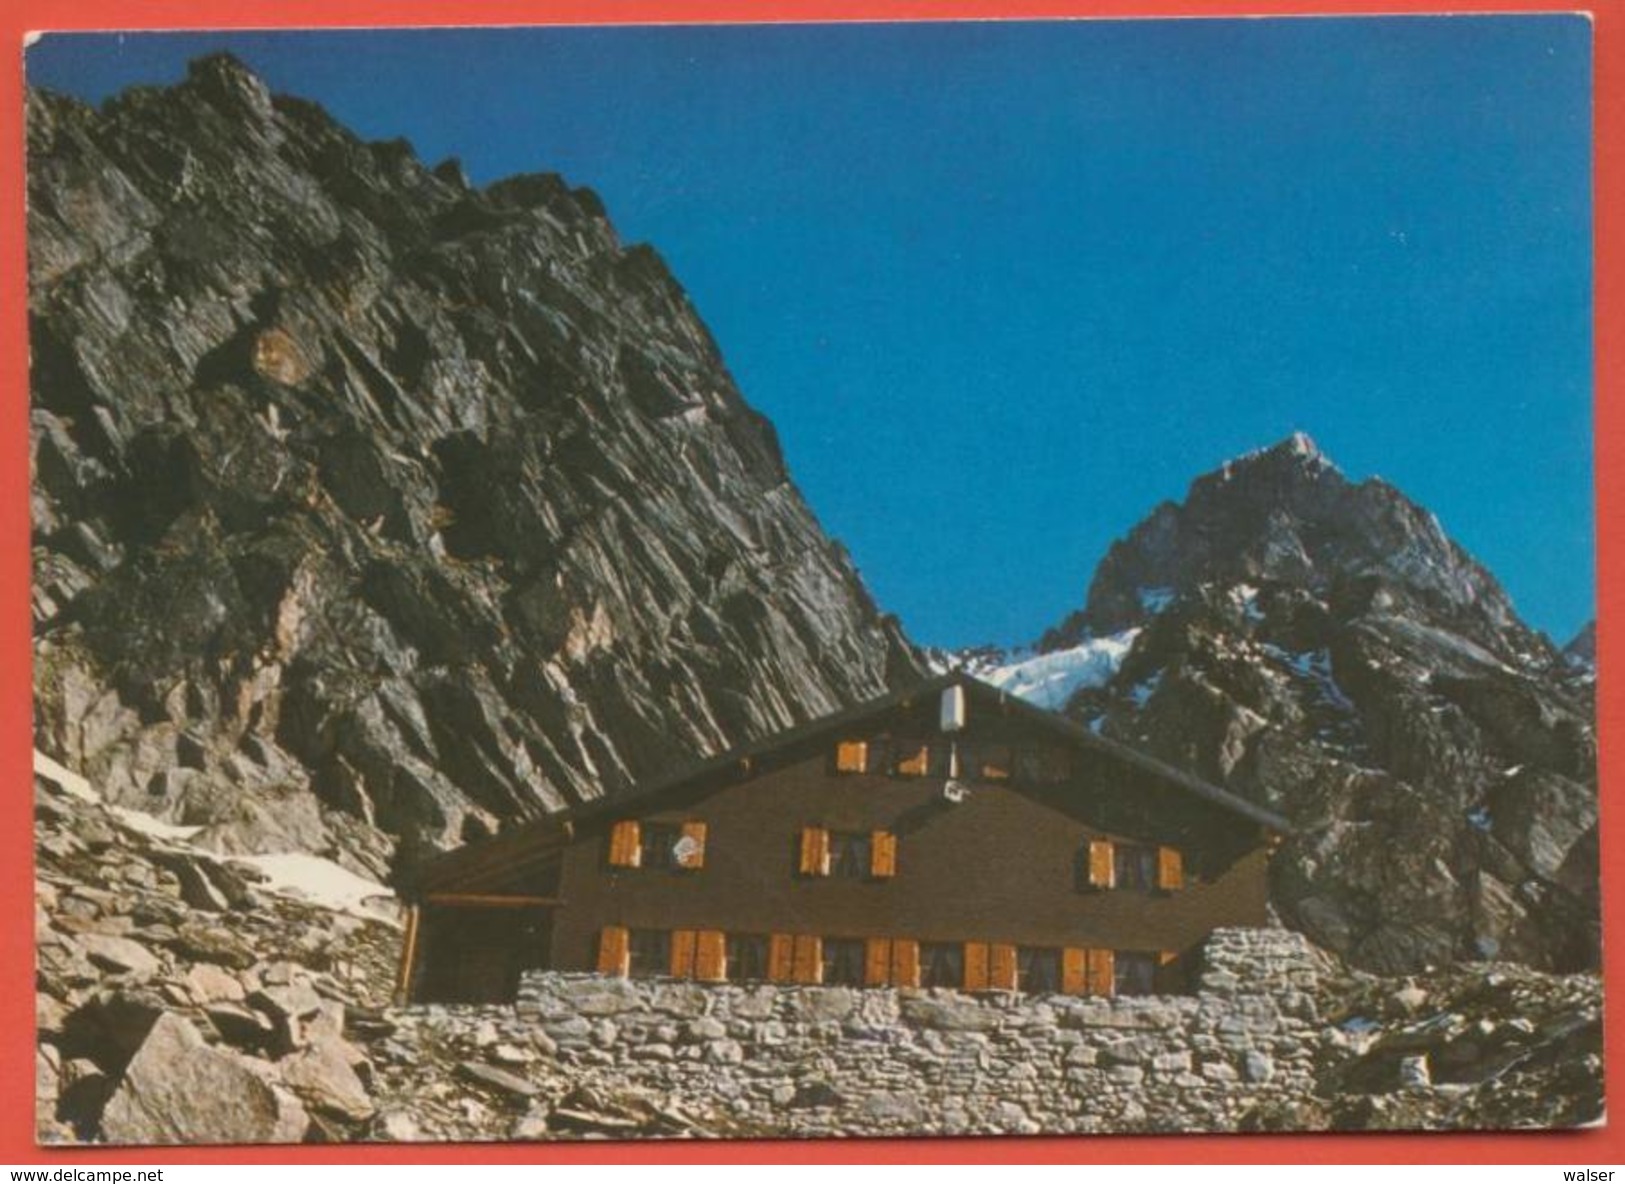 AK 2591 - Schreckhorn, Schreckhorn Hütte, Schreckhornhütte, Grindelwald, Grindelwaldgletscher, Gletscher - Grindelwald